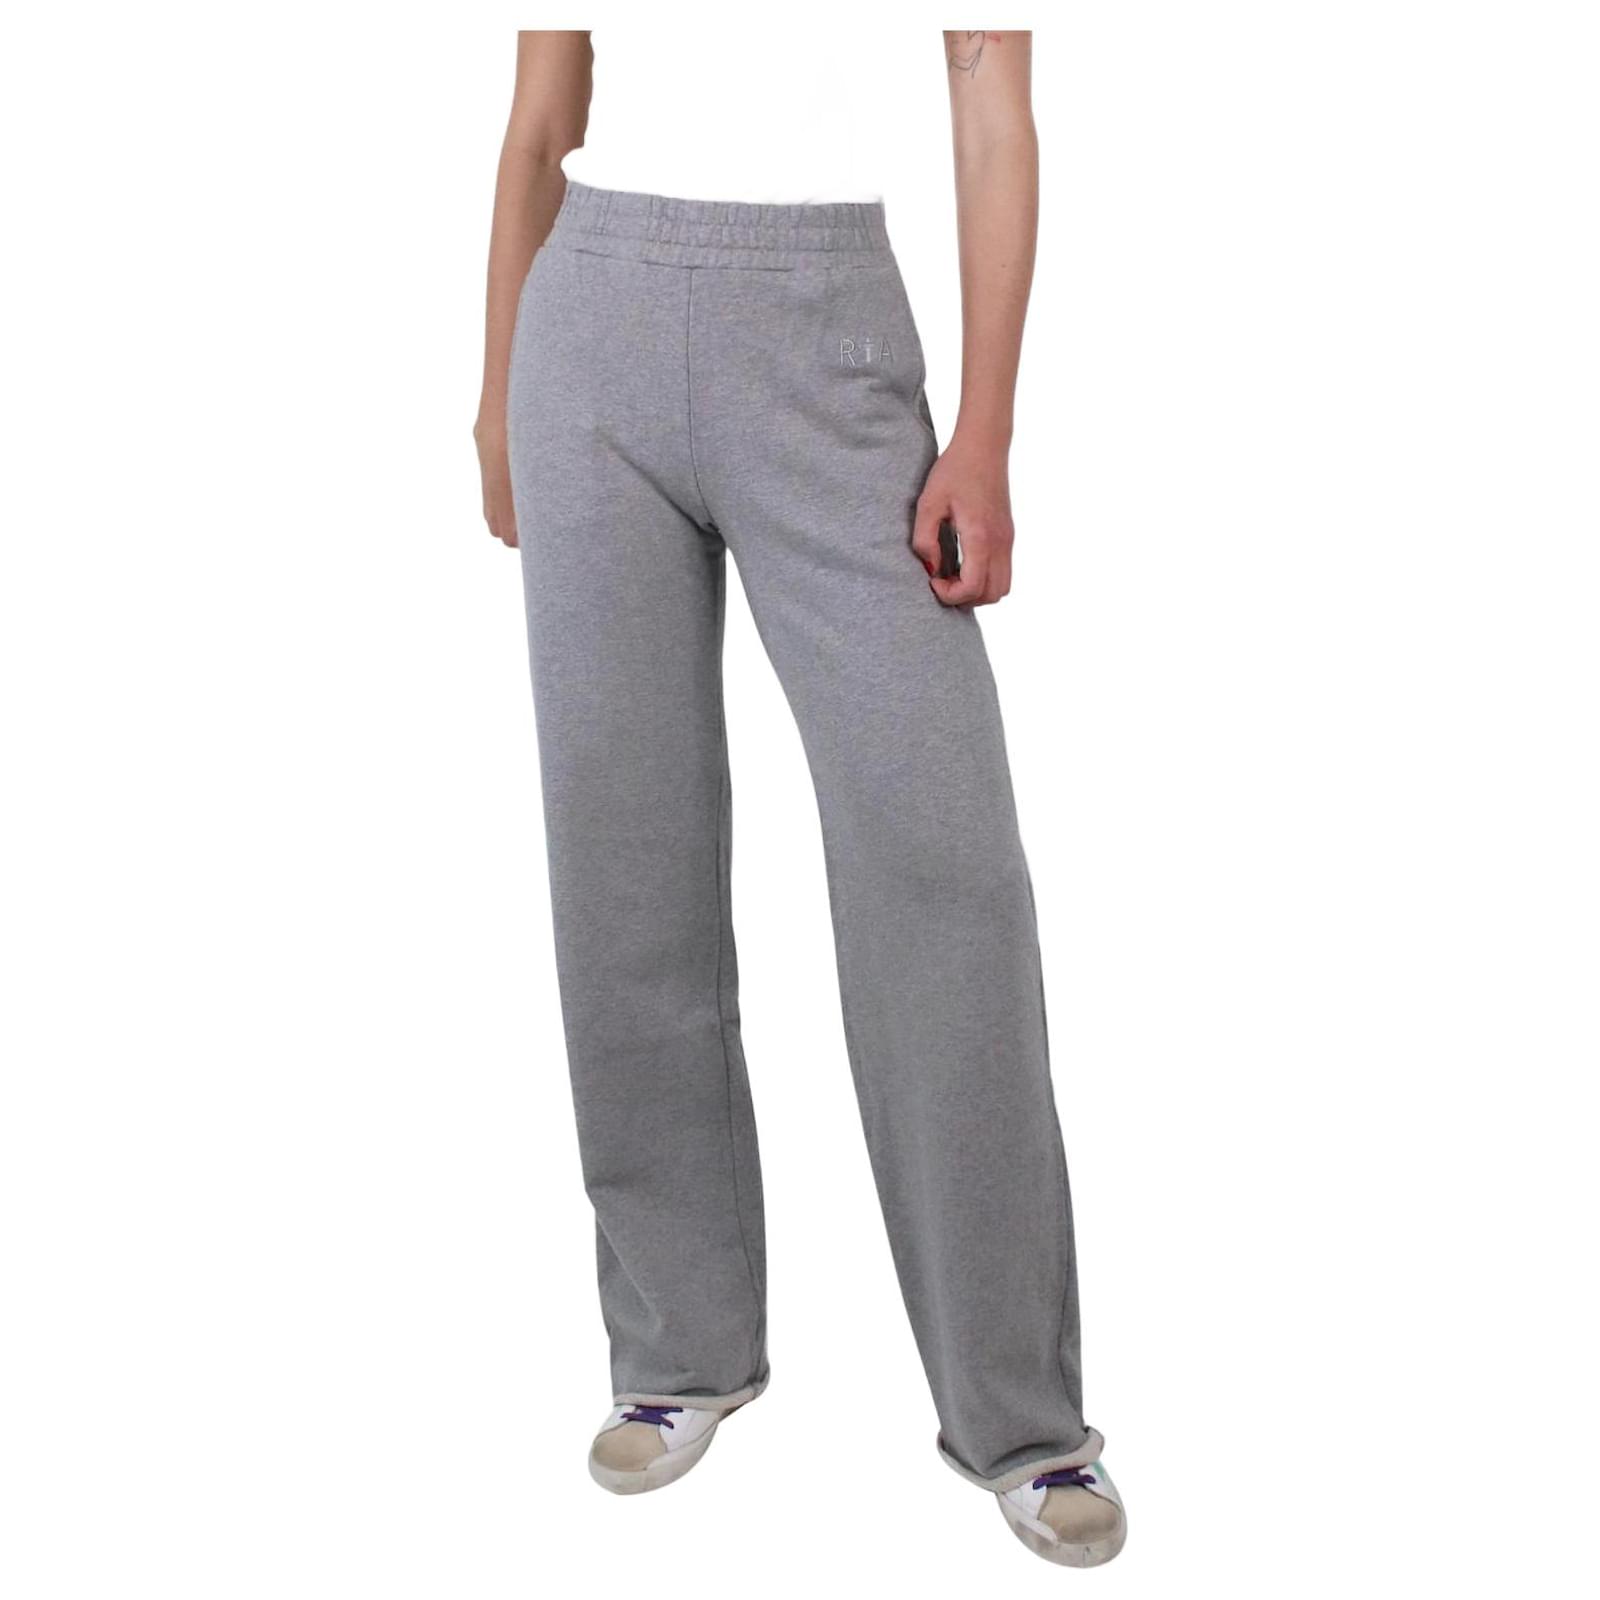 Grey wide-leg sweatpants - size XS